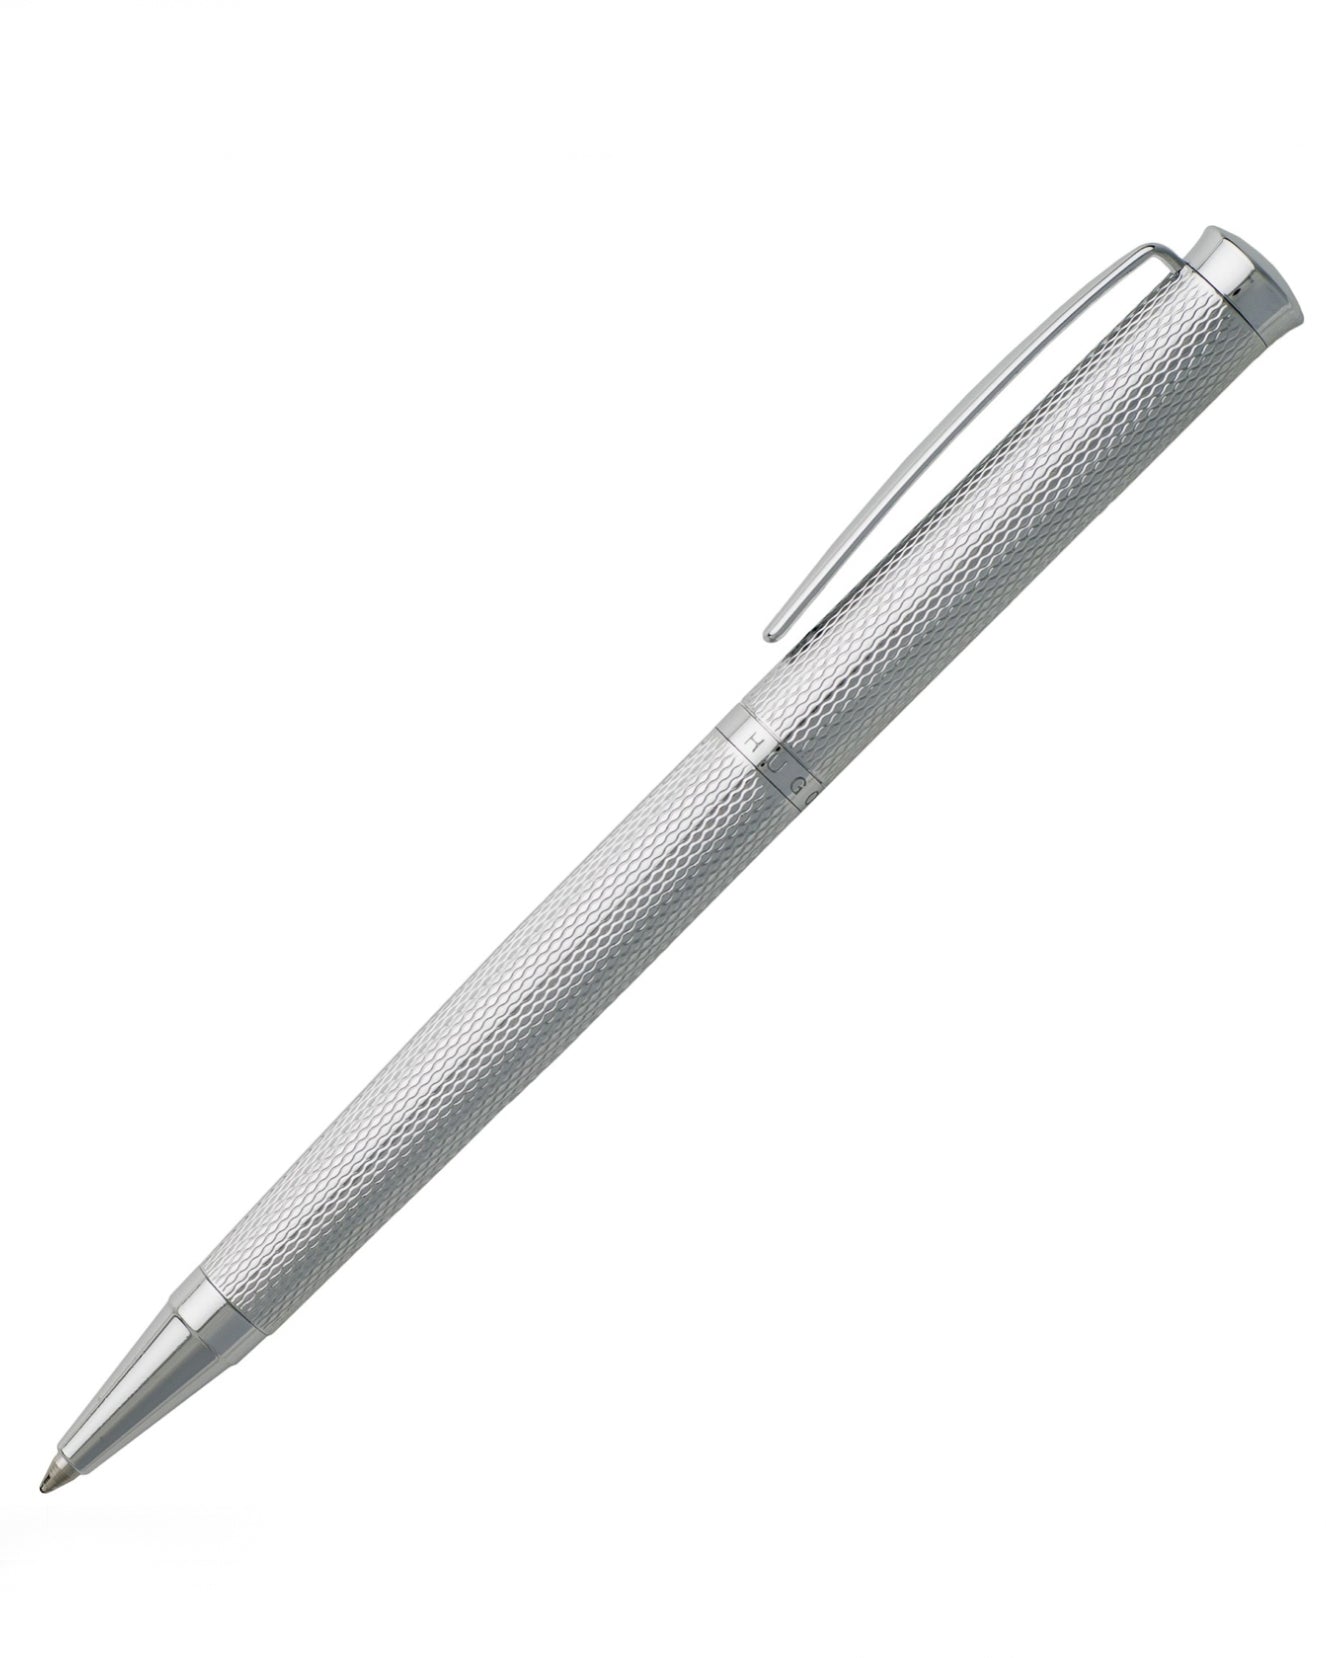 Hugo Boss Sophisticated Chrome Diamond Ballpoint Pen HSY7994B